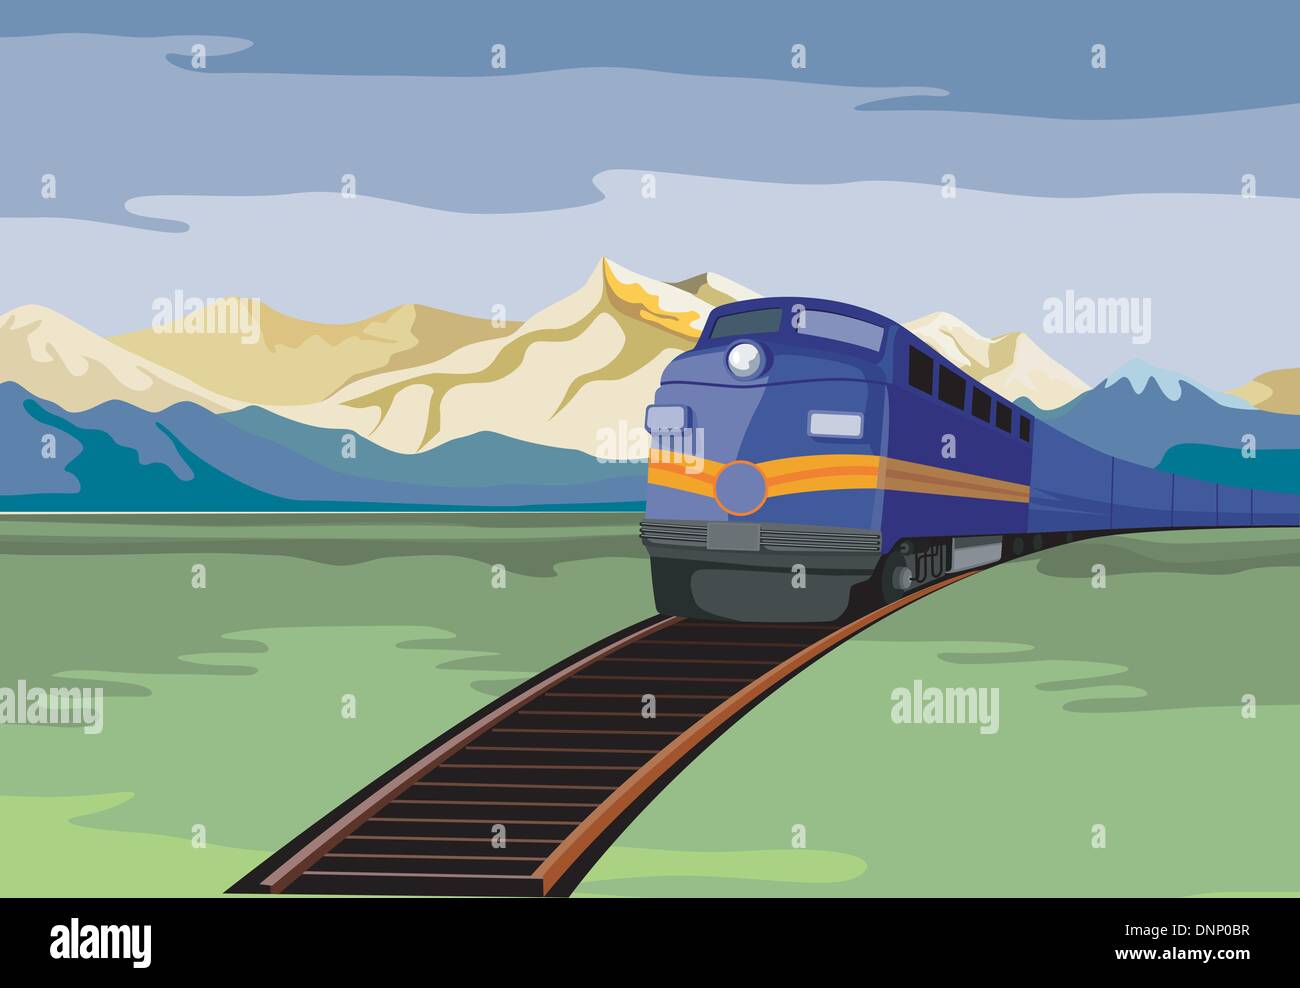 Illustrazione di un treno diesel visto da un angolo alto fatto in stile retrò. Illustrazione Vettoriale